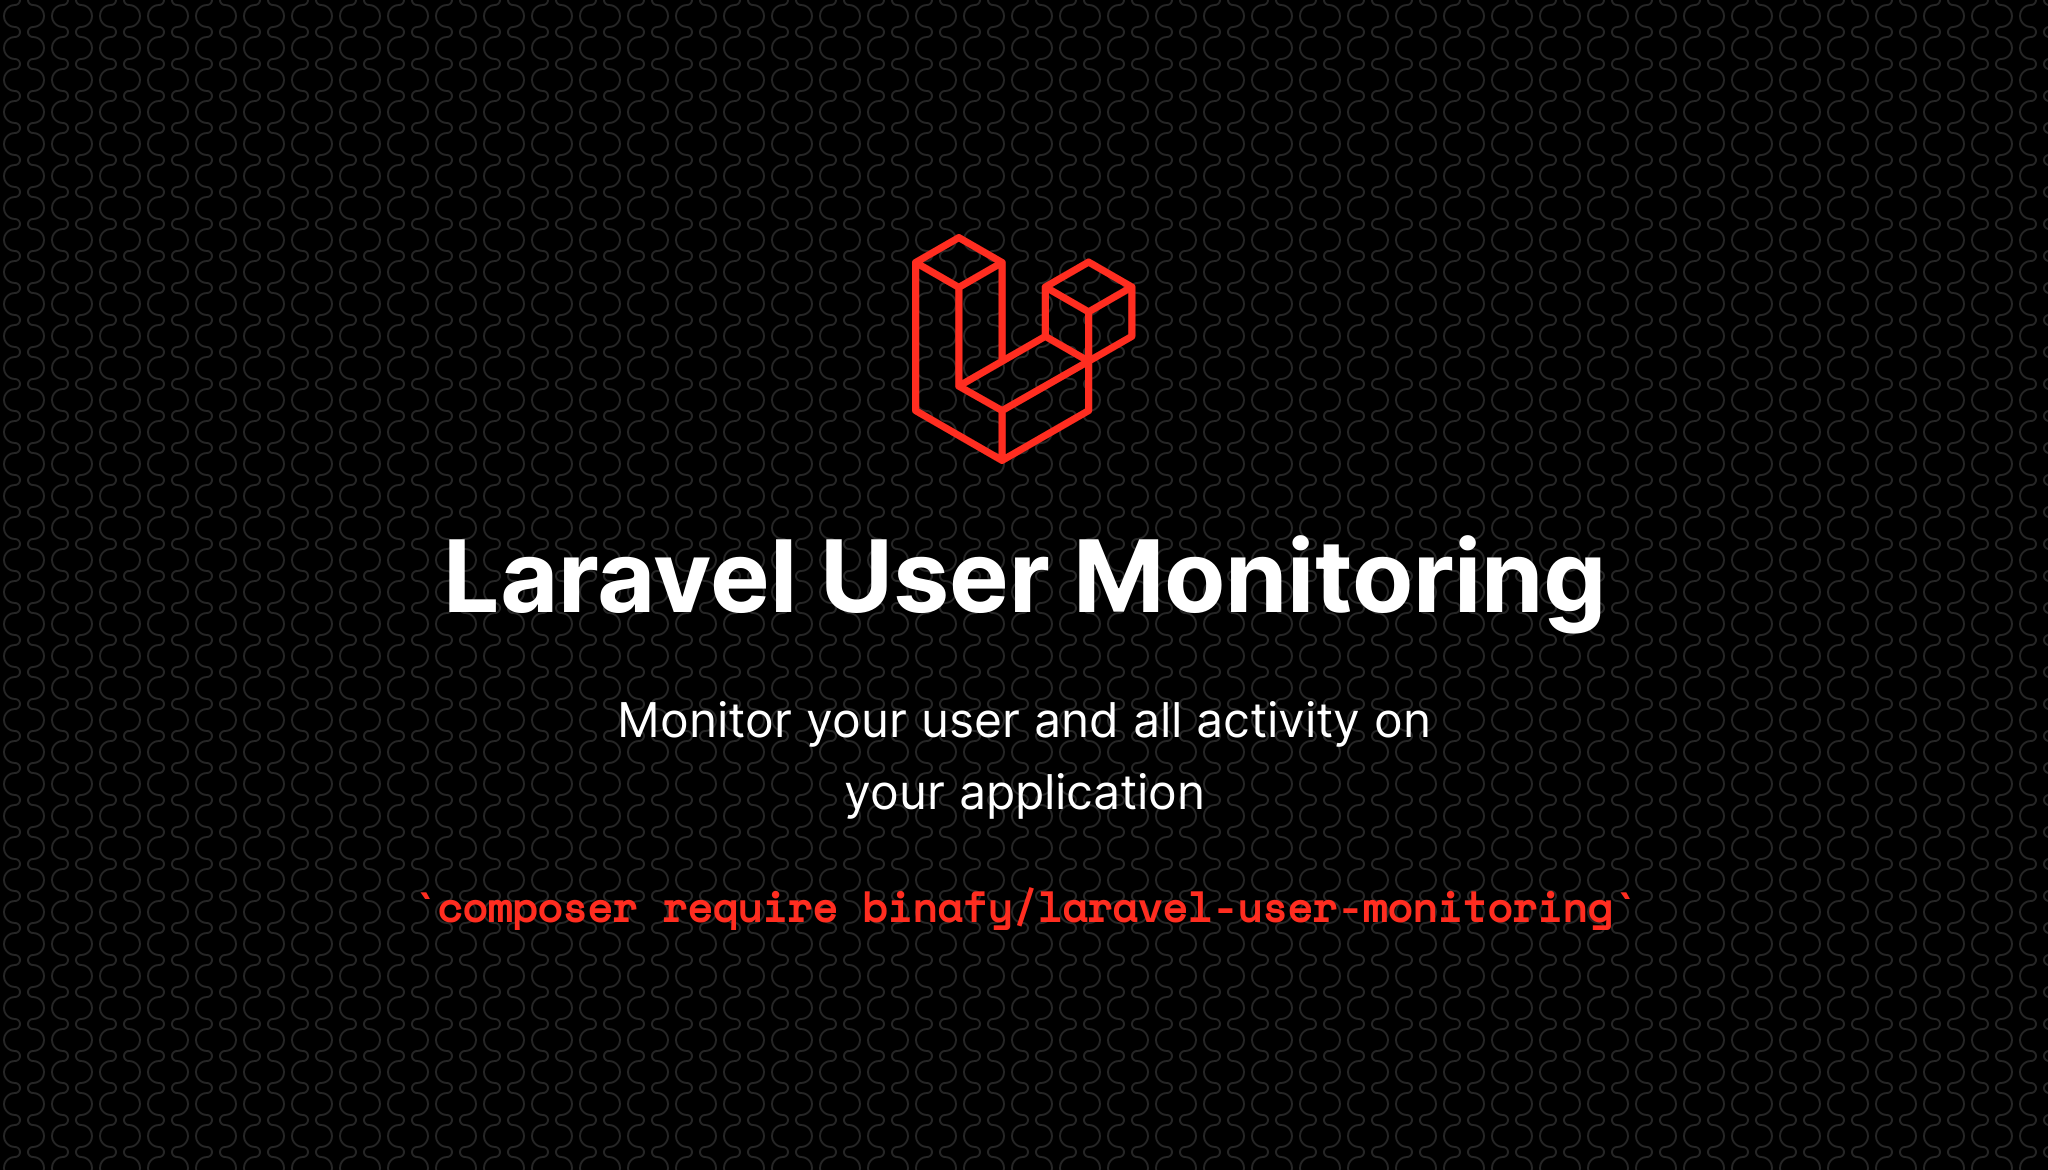 laravel-user-monitoring-banner